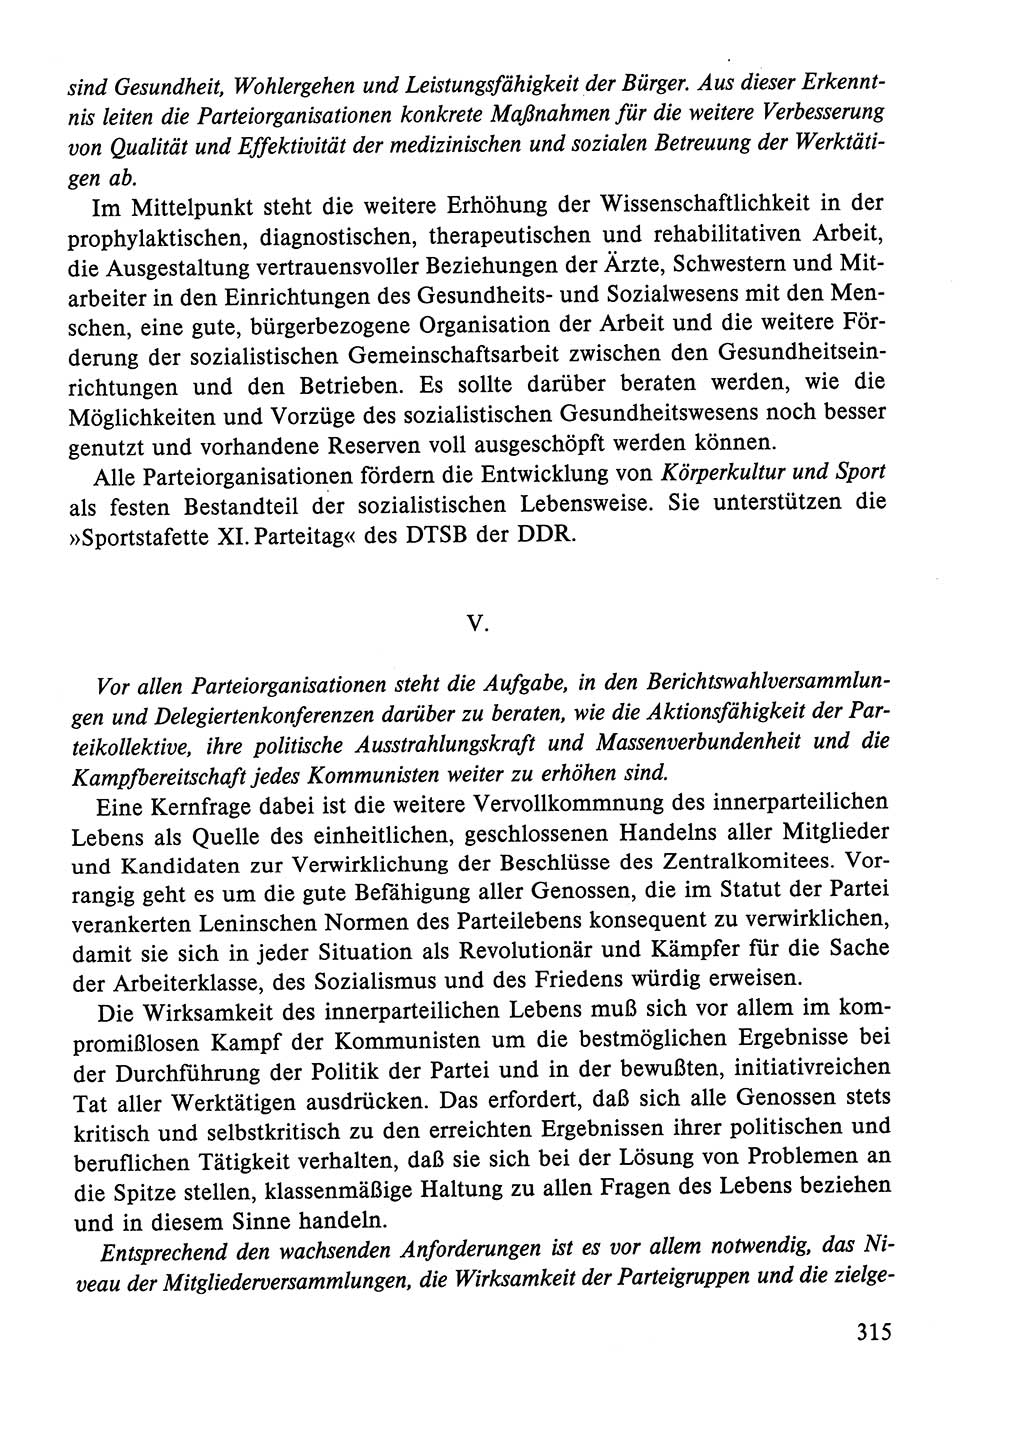 Dokumente der Sozialistischen Einheitspartei Deutschlands (SED) [Deutsche Demokratische Republik (DDR)] 1984-1985, Seite 112 (Dok. SED DDR 1984-1985, S. 112)